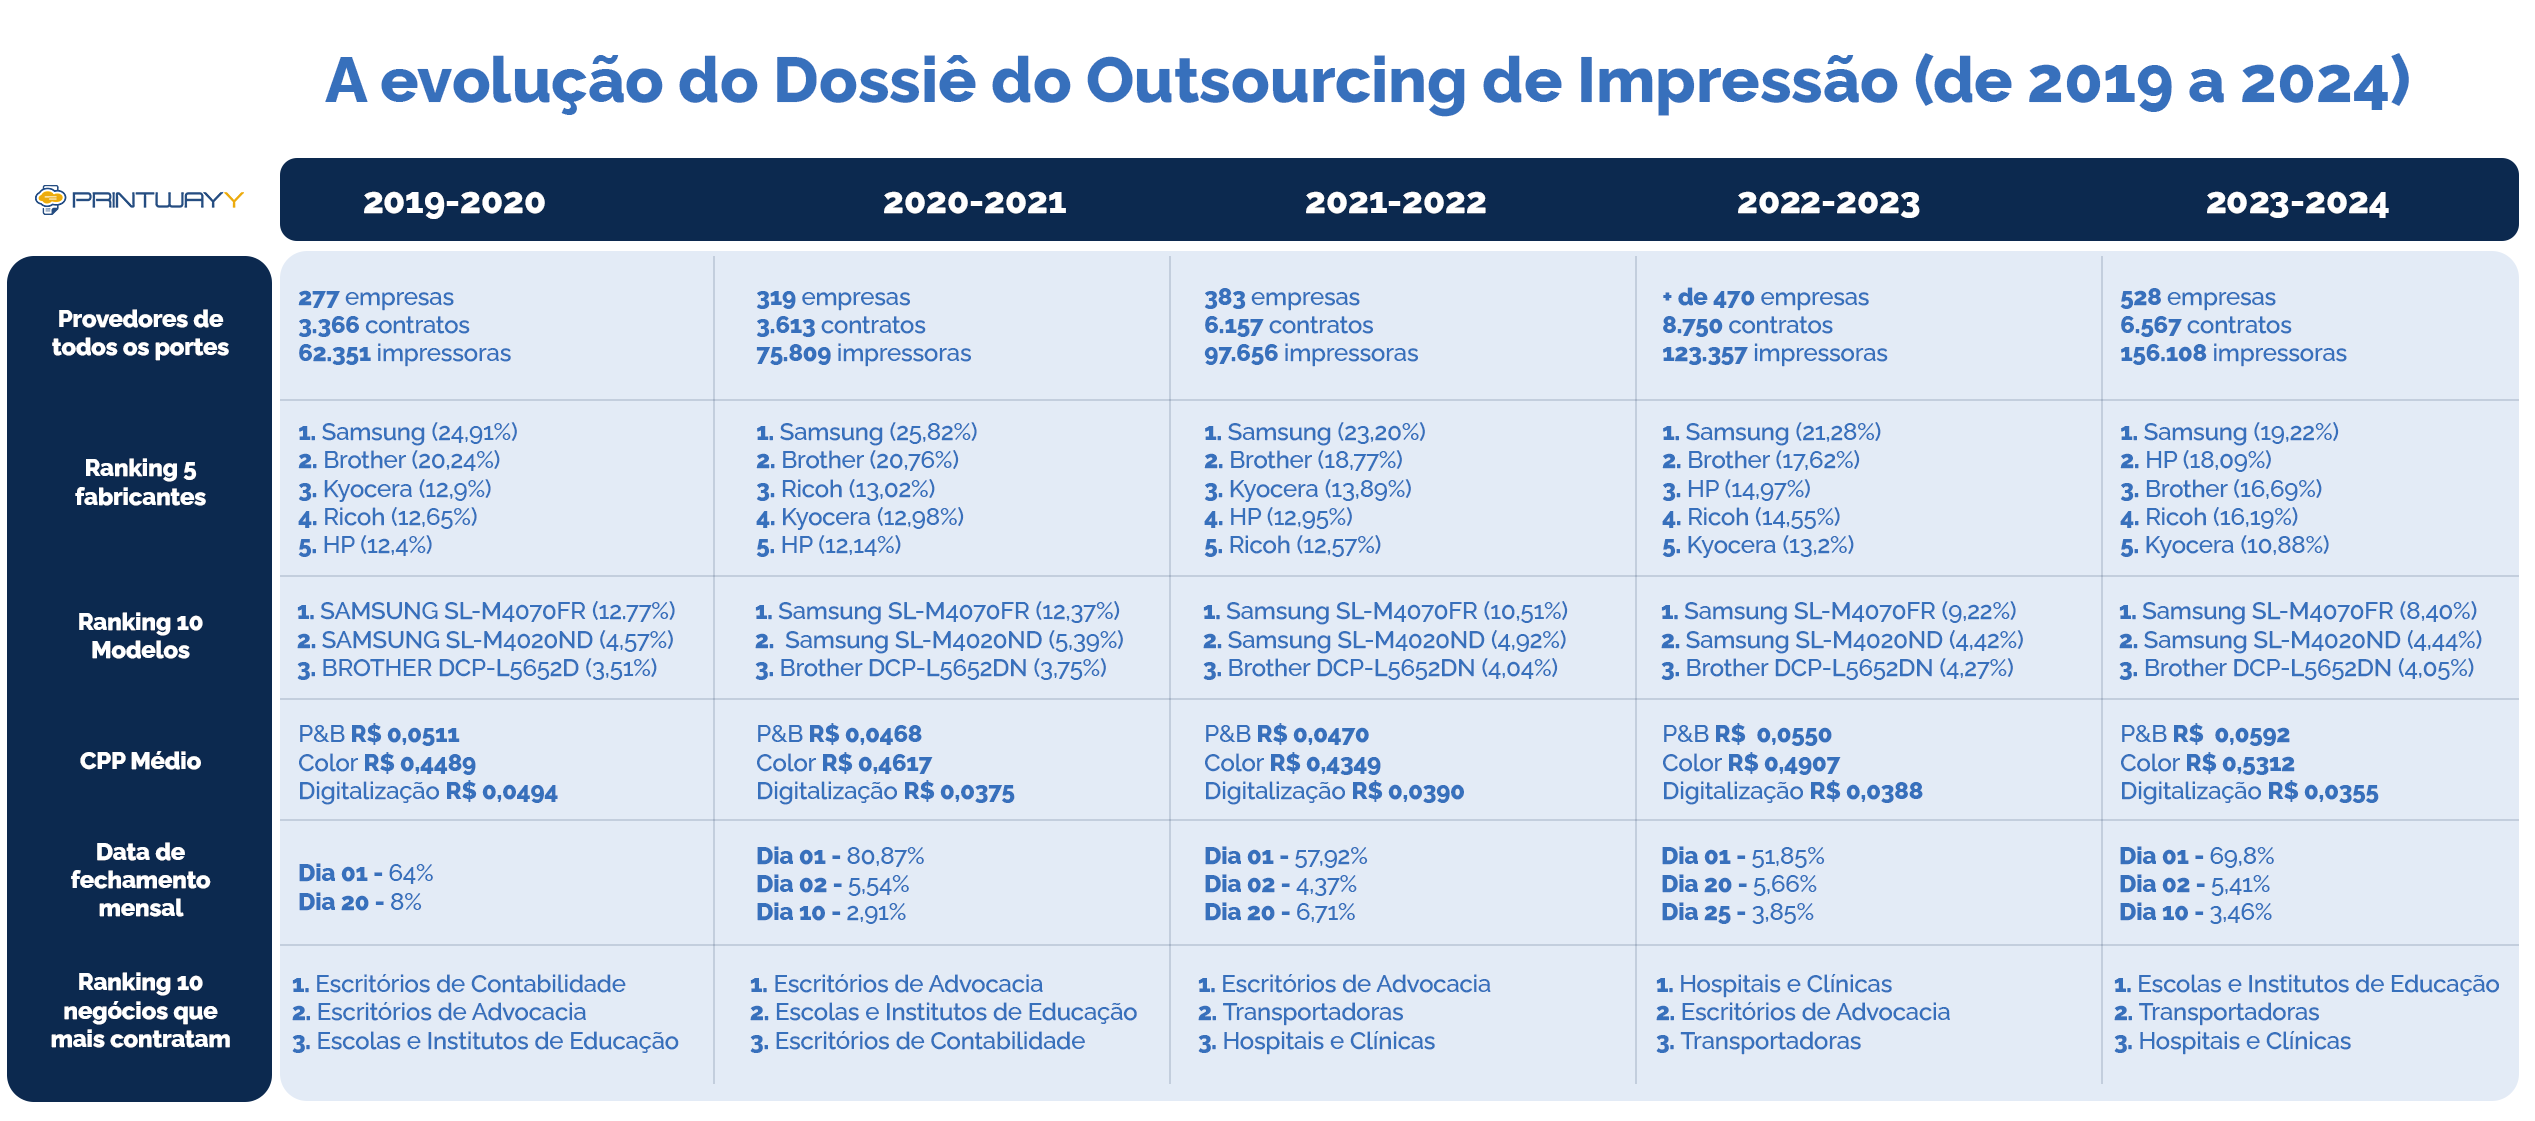 Tabela com a evolução do material Dossiê do Outsourcing de Impressão desde 2019 até 2024).